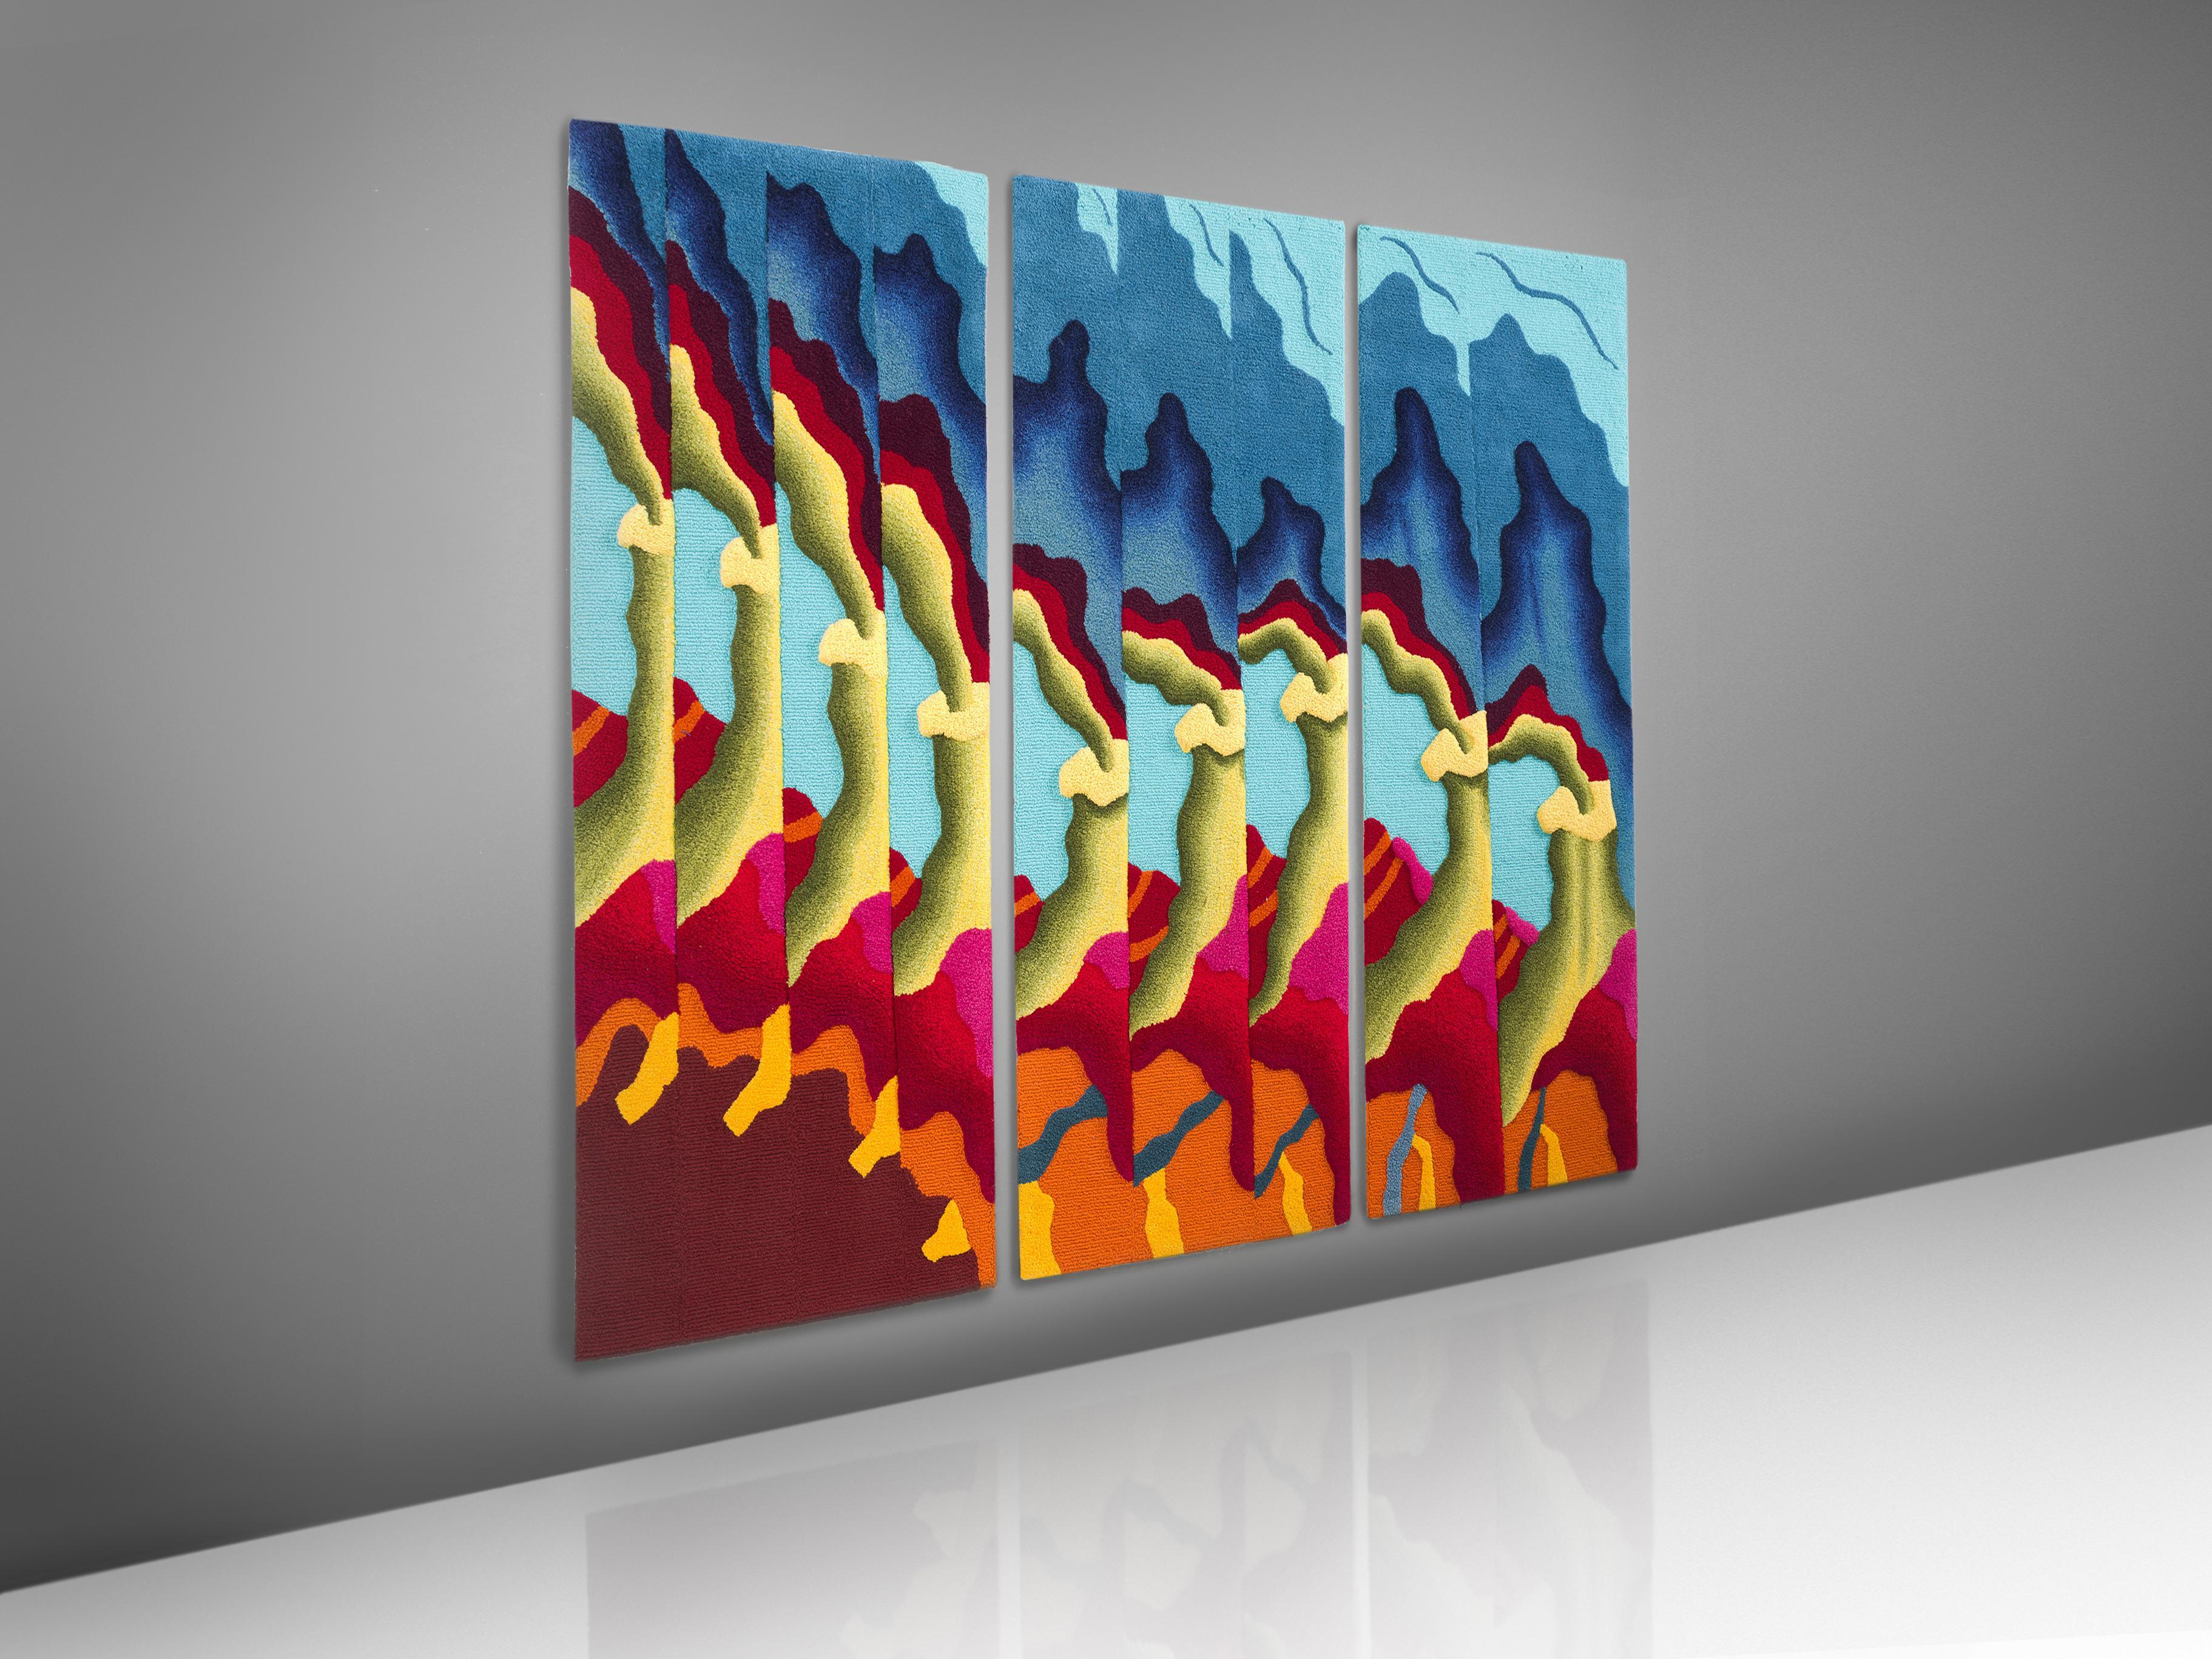 Tekima, Teppich-Triptychon aus farbiger Wolle, 1970er Jahre, Deutschland.

Dieses farbenfrohe Triptychon wird von den Handwerkern des Tekima Teppichkunststudios in Hamburg hergestellt. Das gewundene Muster ist in allen Farben des Regenbogens, grün,